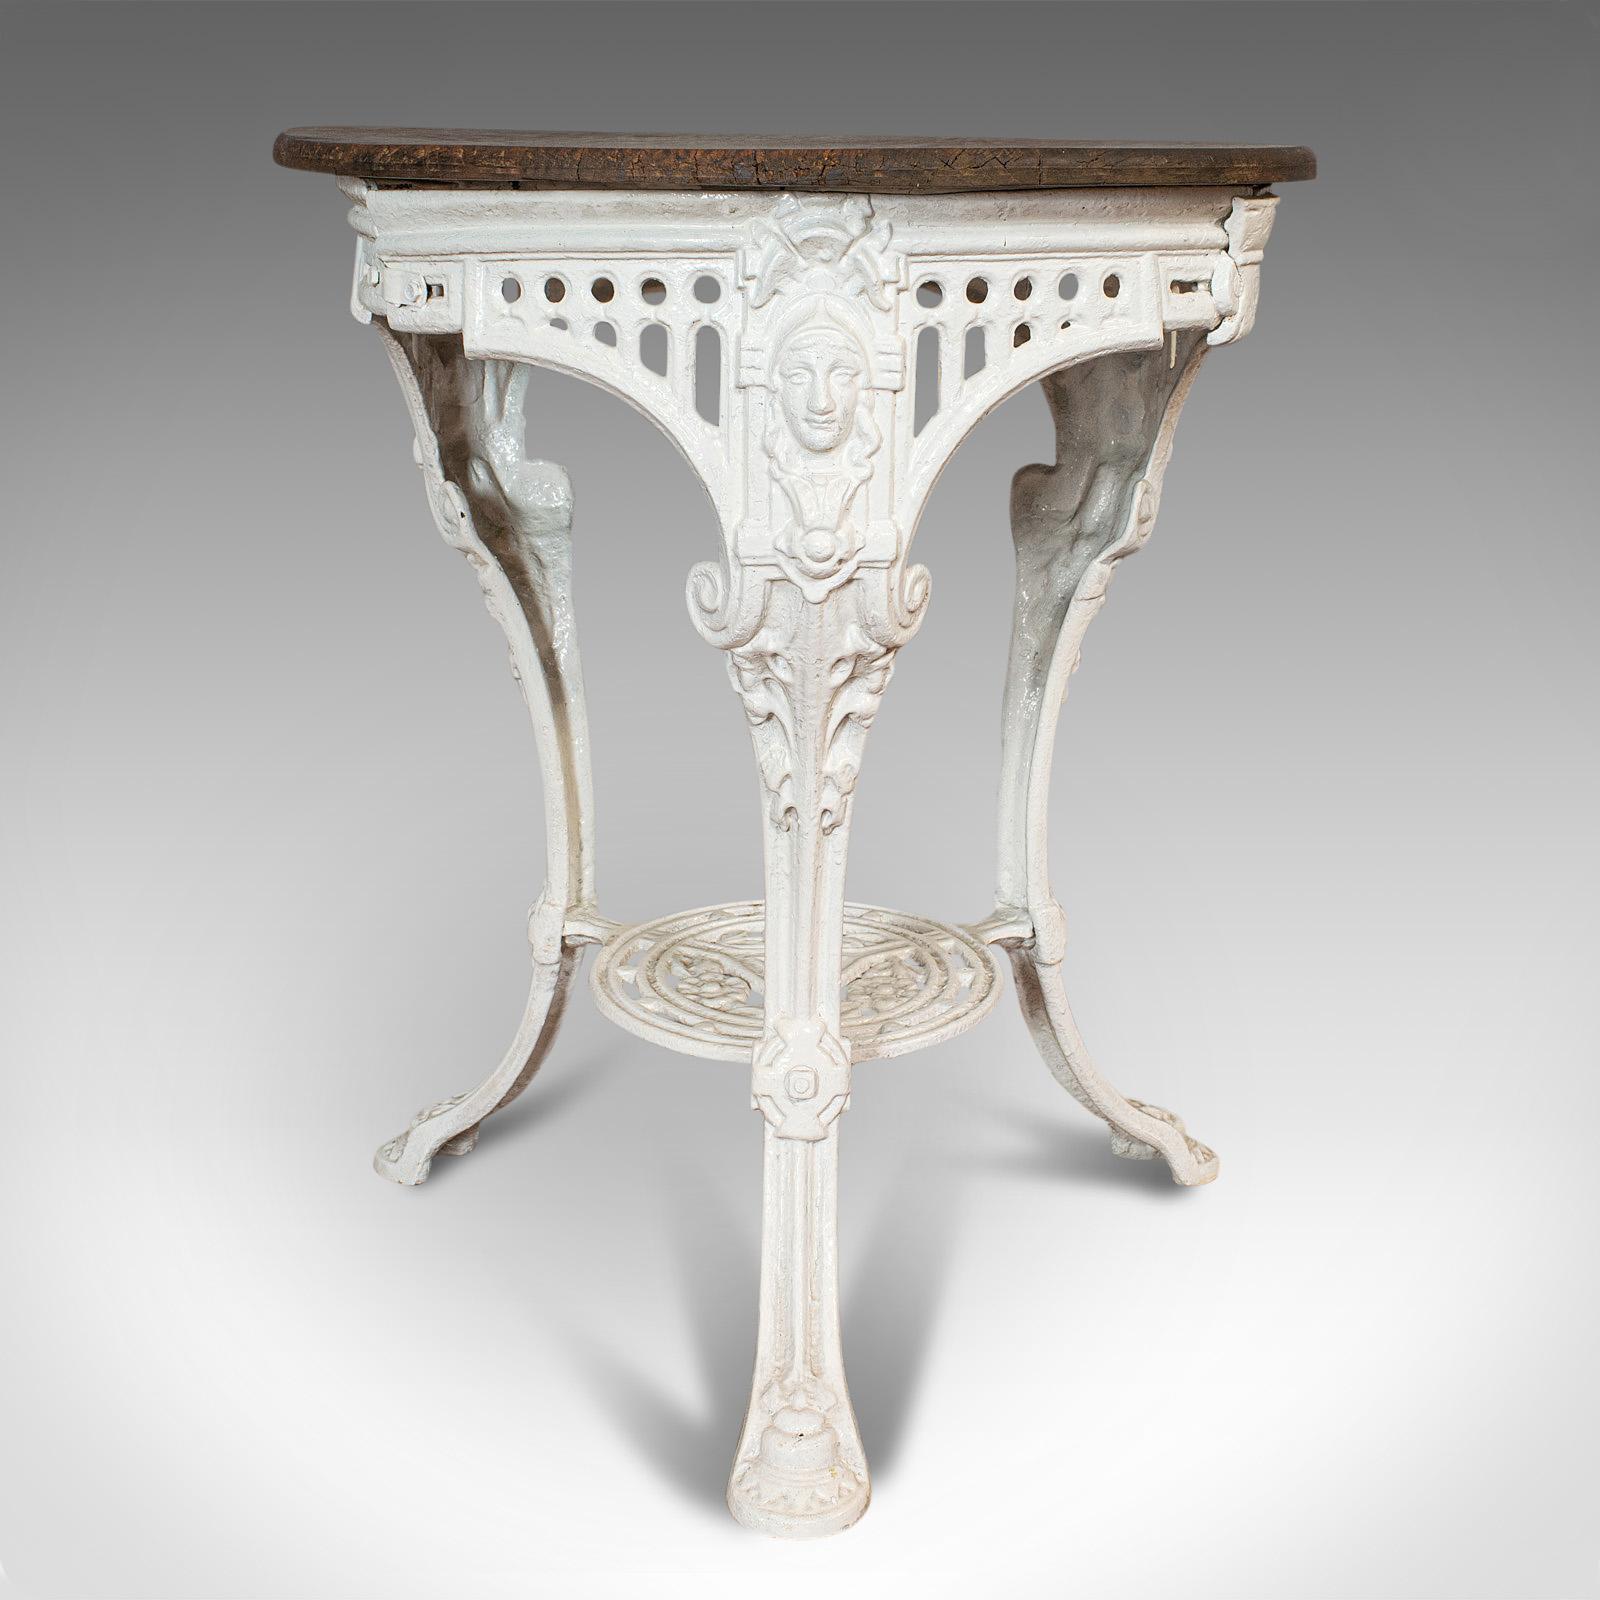 19th Century Antique Britannia Table, English, Cast Iron, Cedar, Garden, Outdoor, Victorian